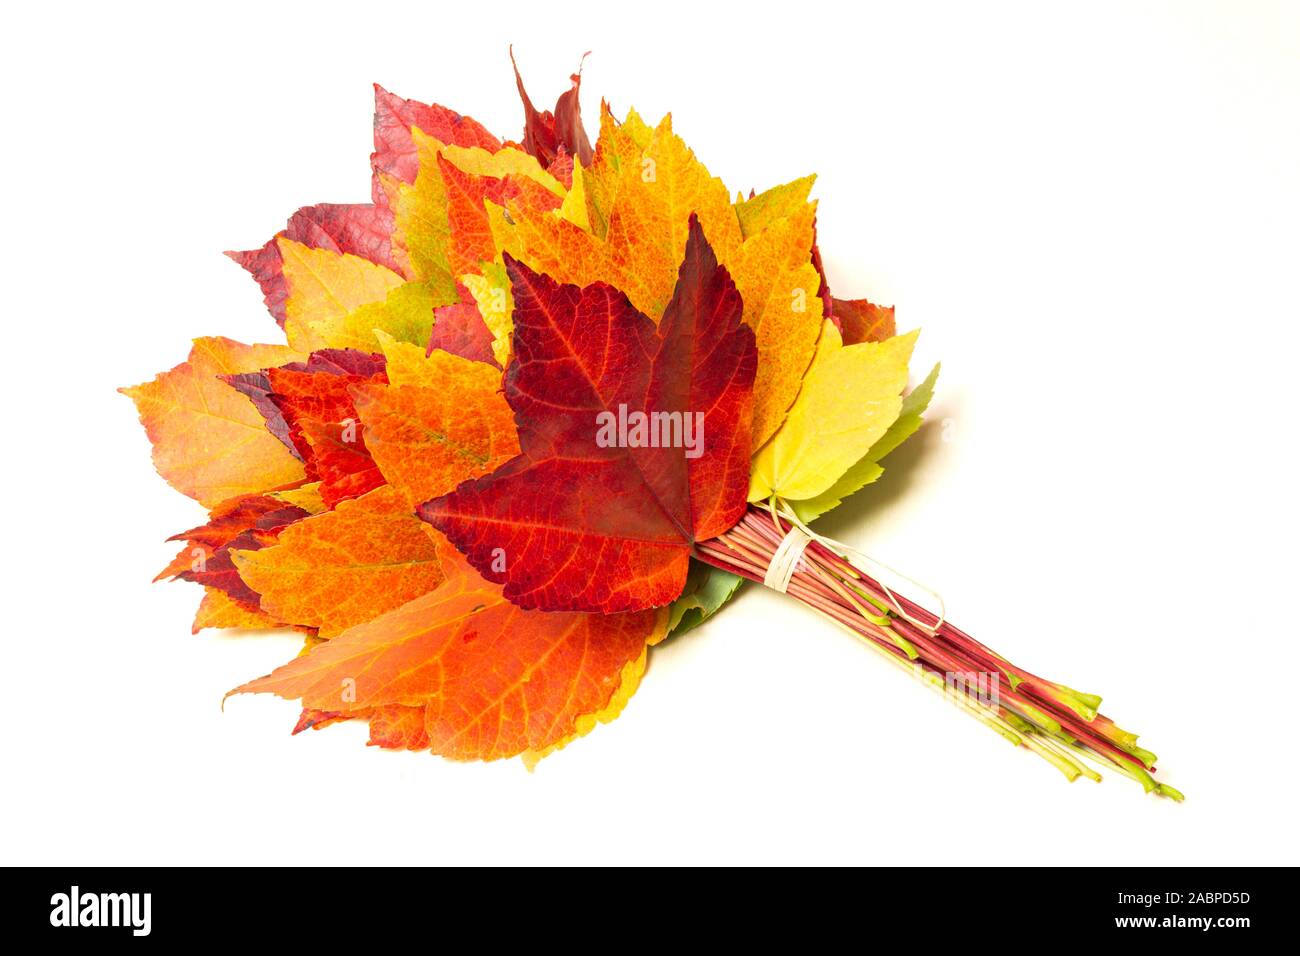 Les feuilles d'automne avec des tons de couleurs du vert au rouge Banque D'Images